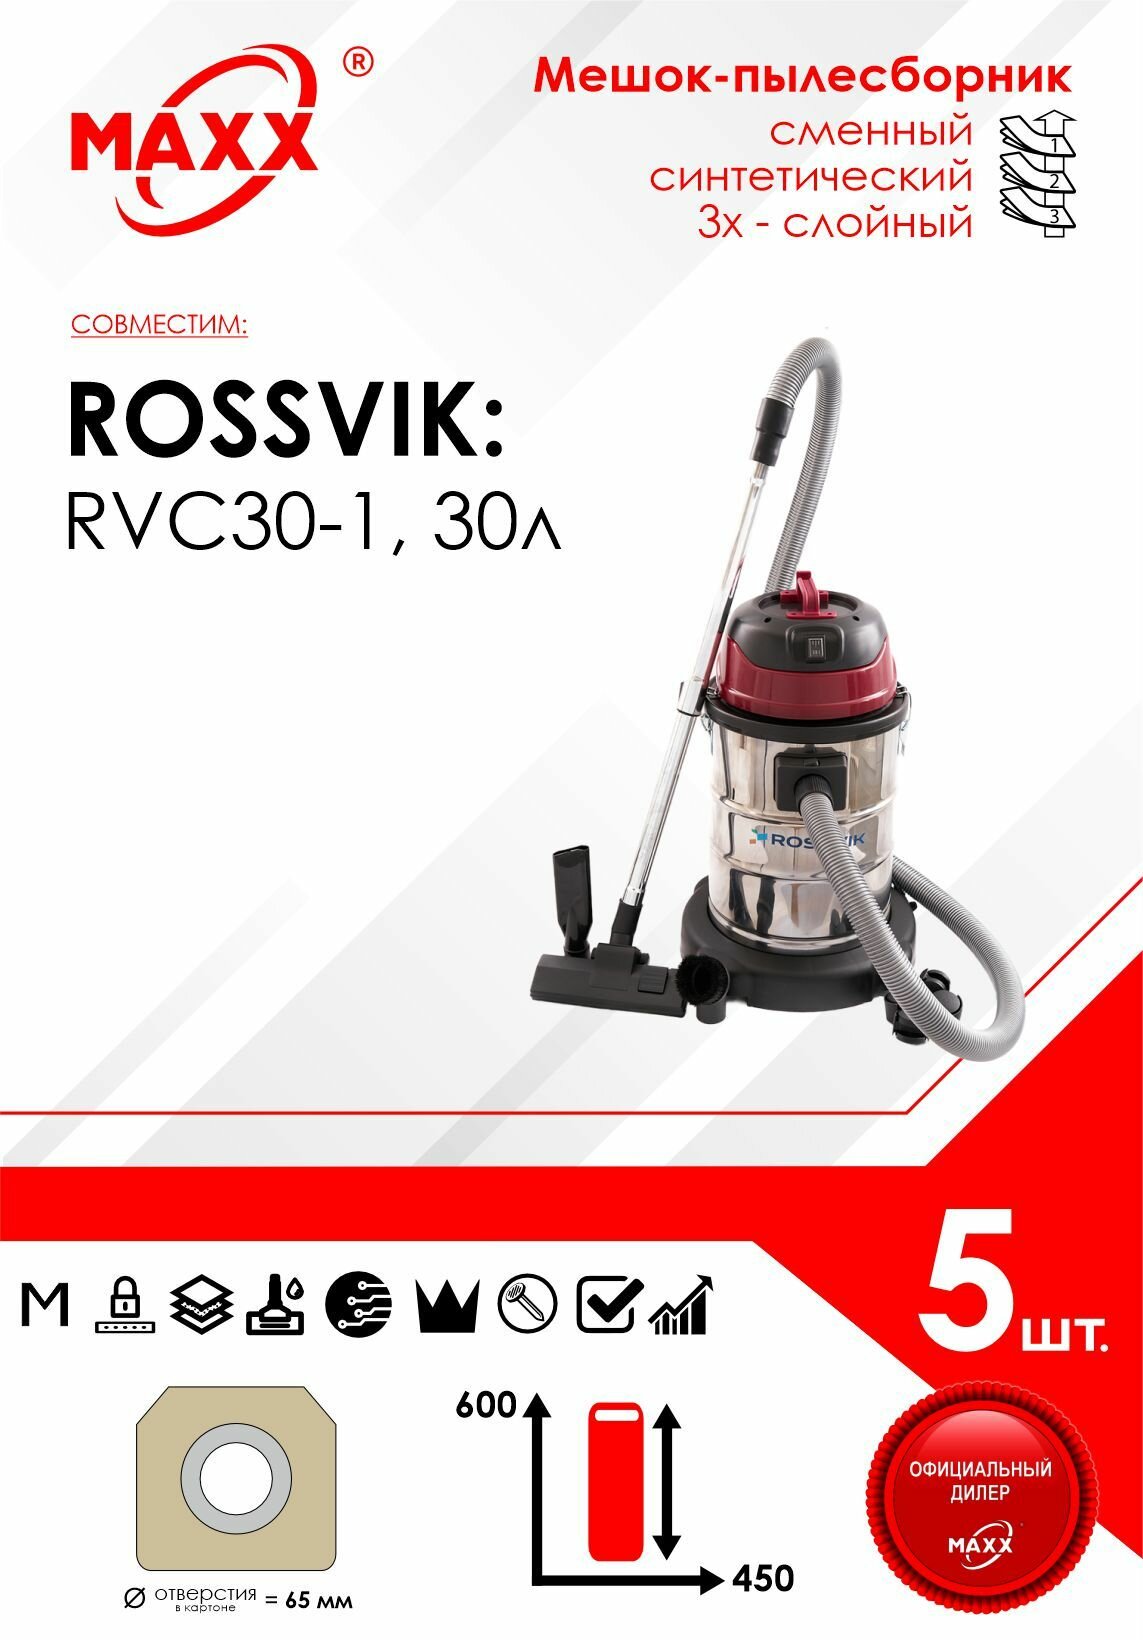 Мешок - пылесборник 5 шт. для пылесоса ROSSVIK RVC30-1, 30Л, 1500ВТ